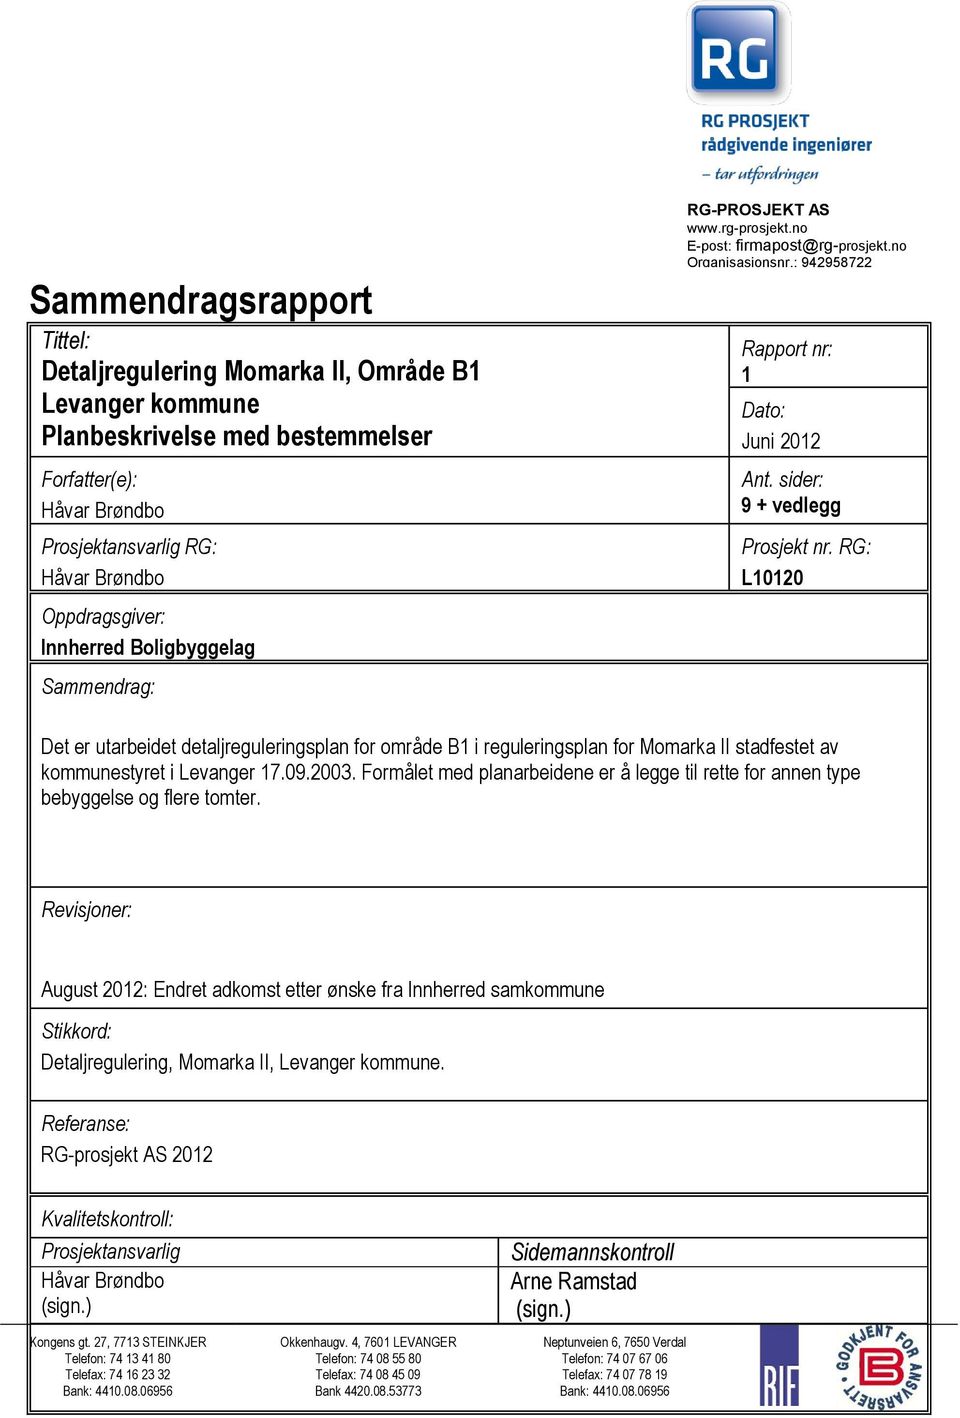 RG: L10120 Det er utarbeidet detaljreguleringsplan for område B1 i reguleringsplan for Momarka II stadfestet av kommunestyret i Levanger 17.09.2003.